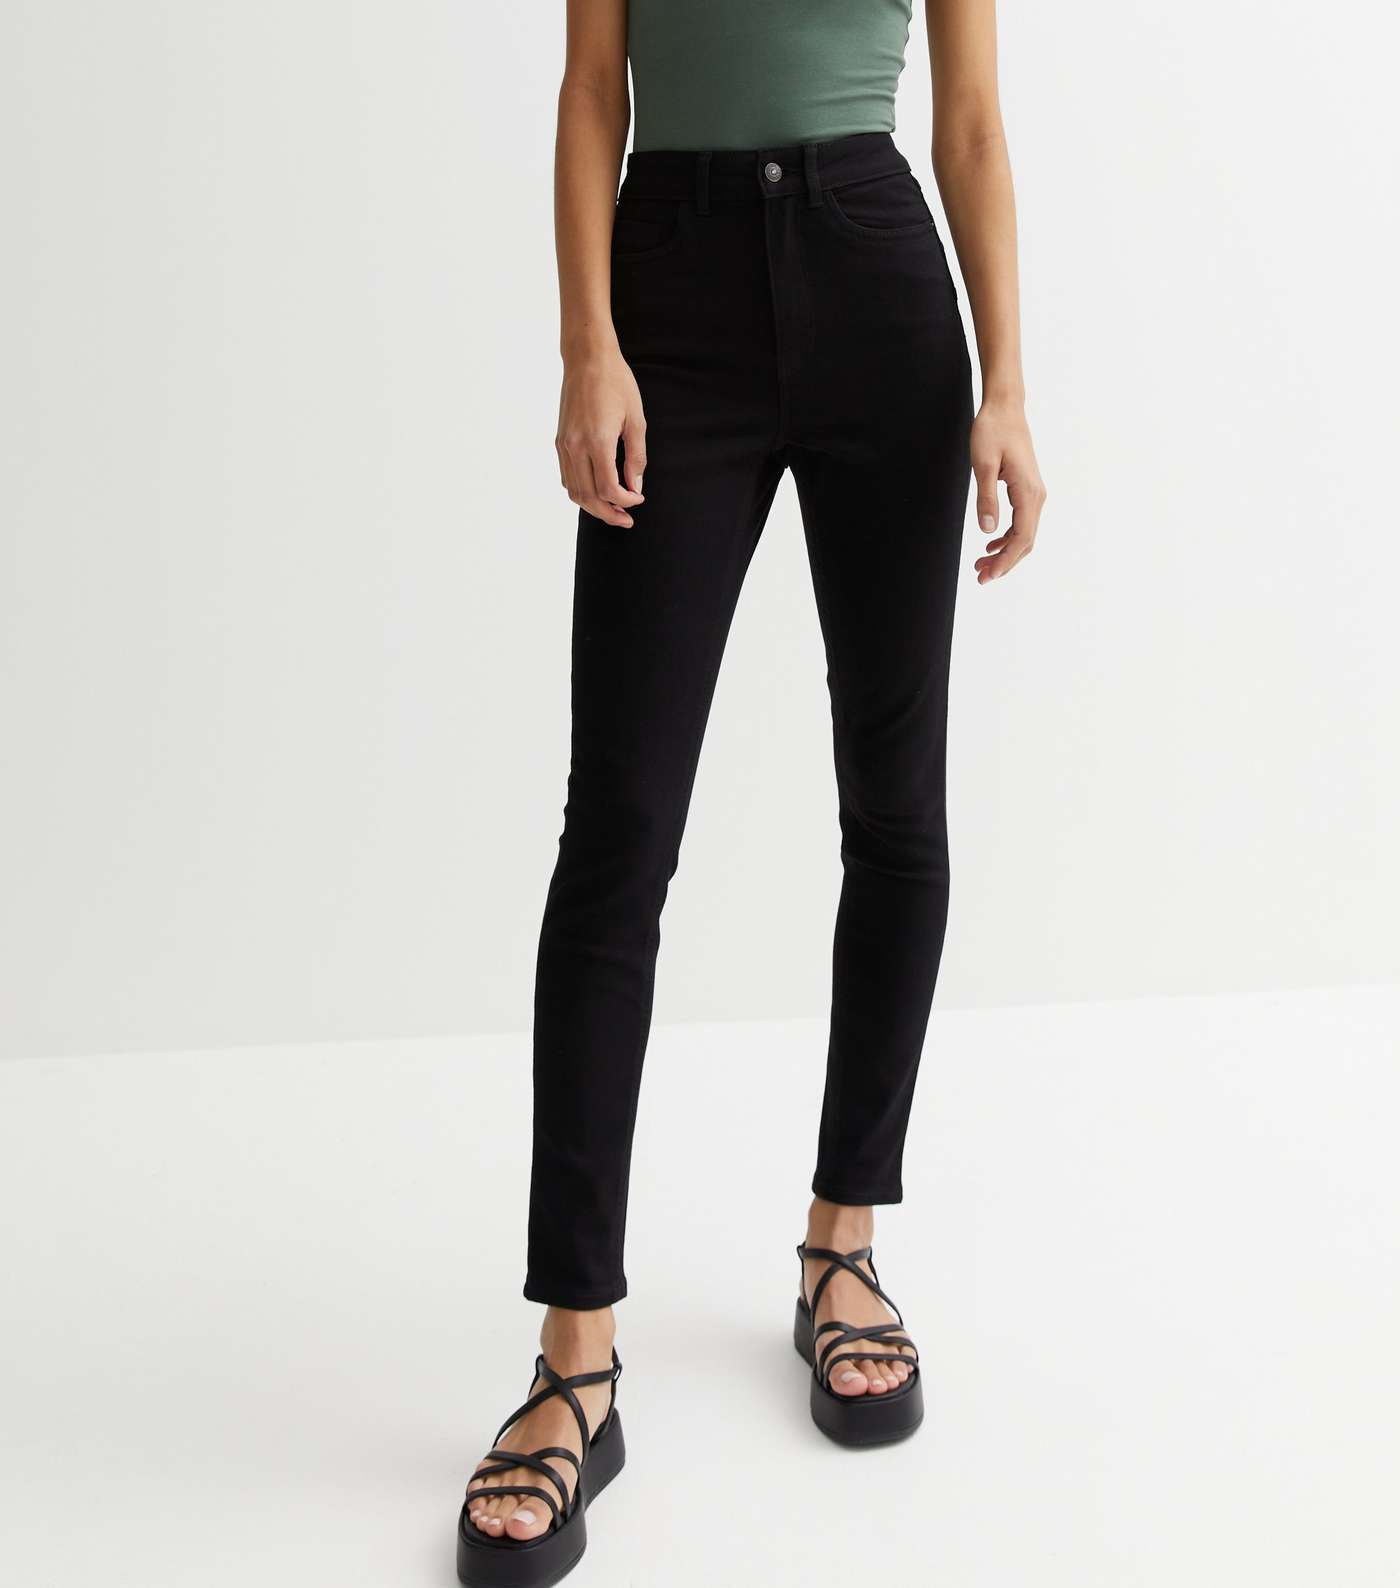 Stay Black Lift & Shape Jenna Skinny Jeans Image 2